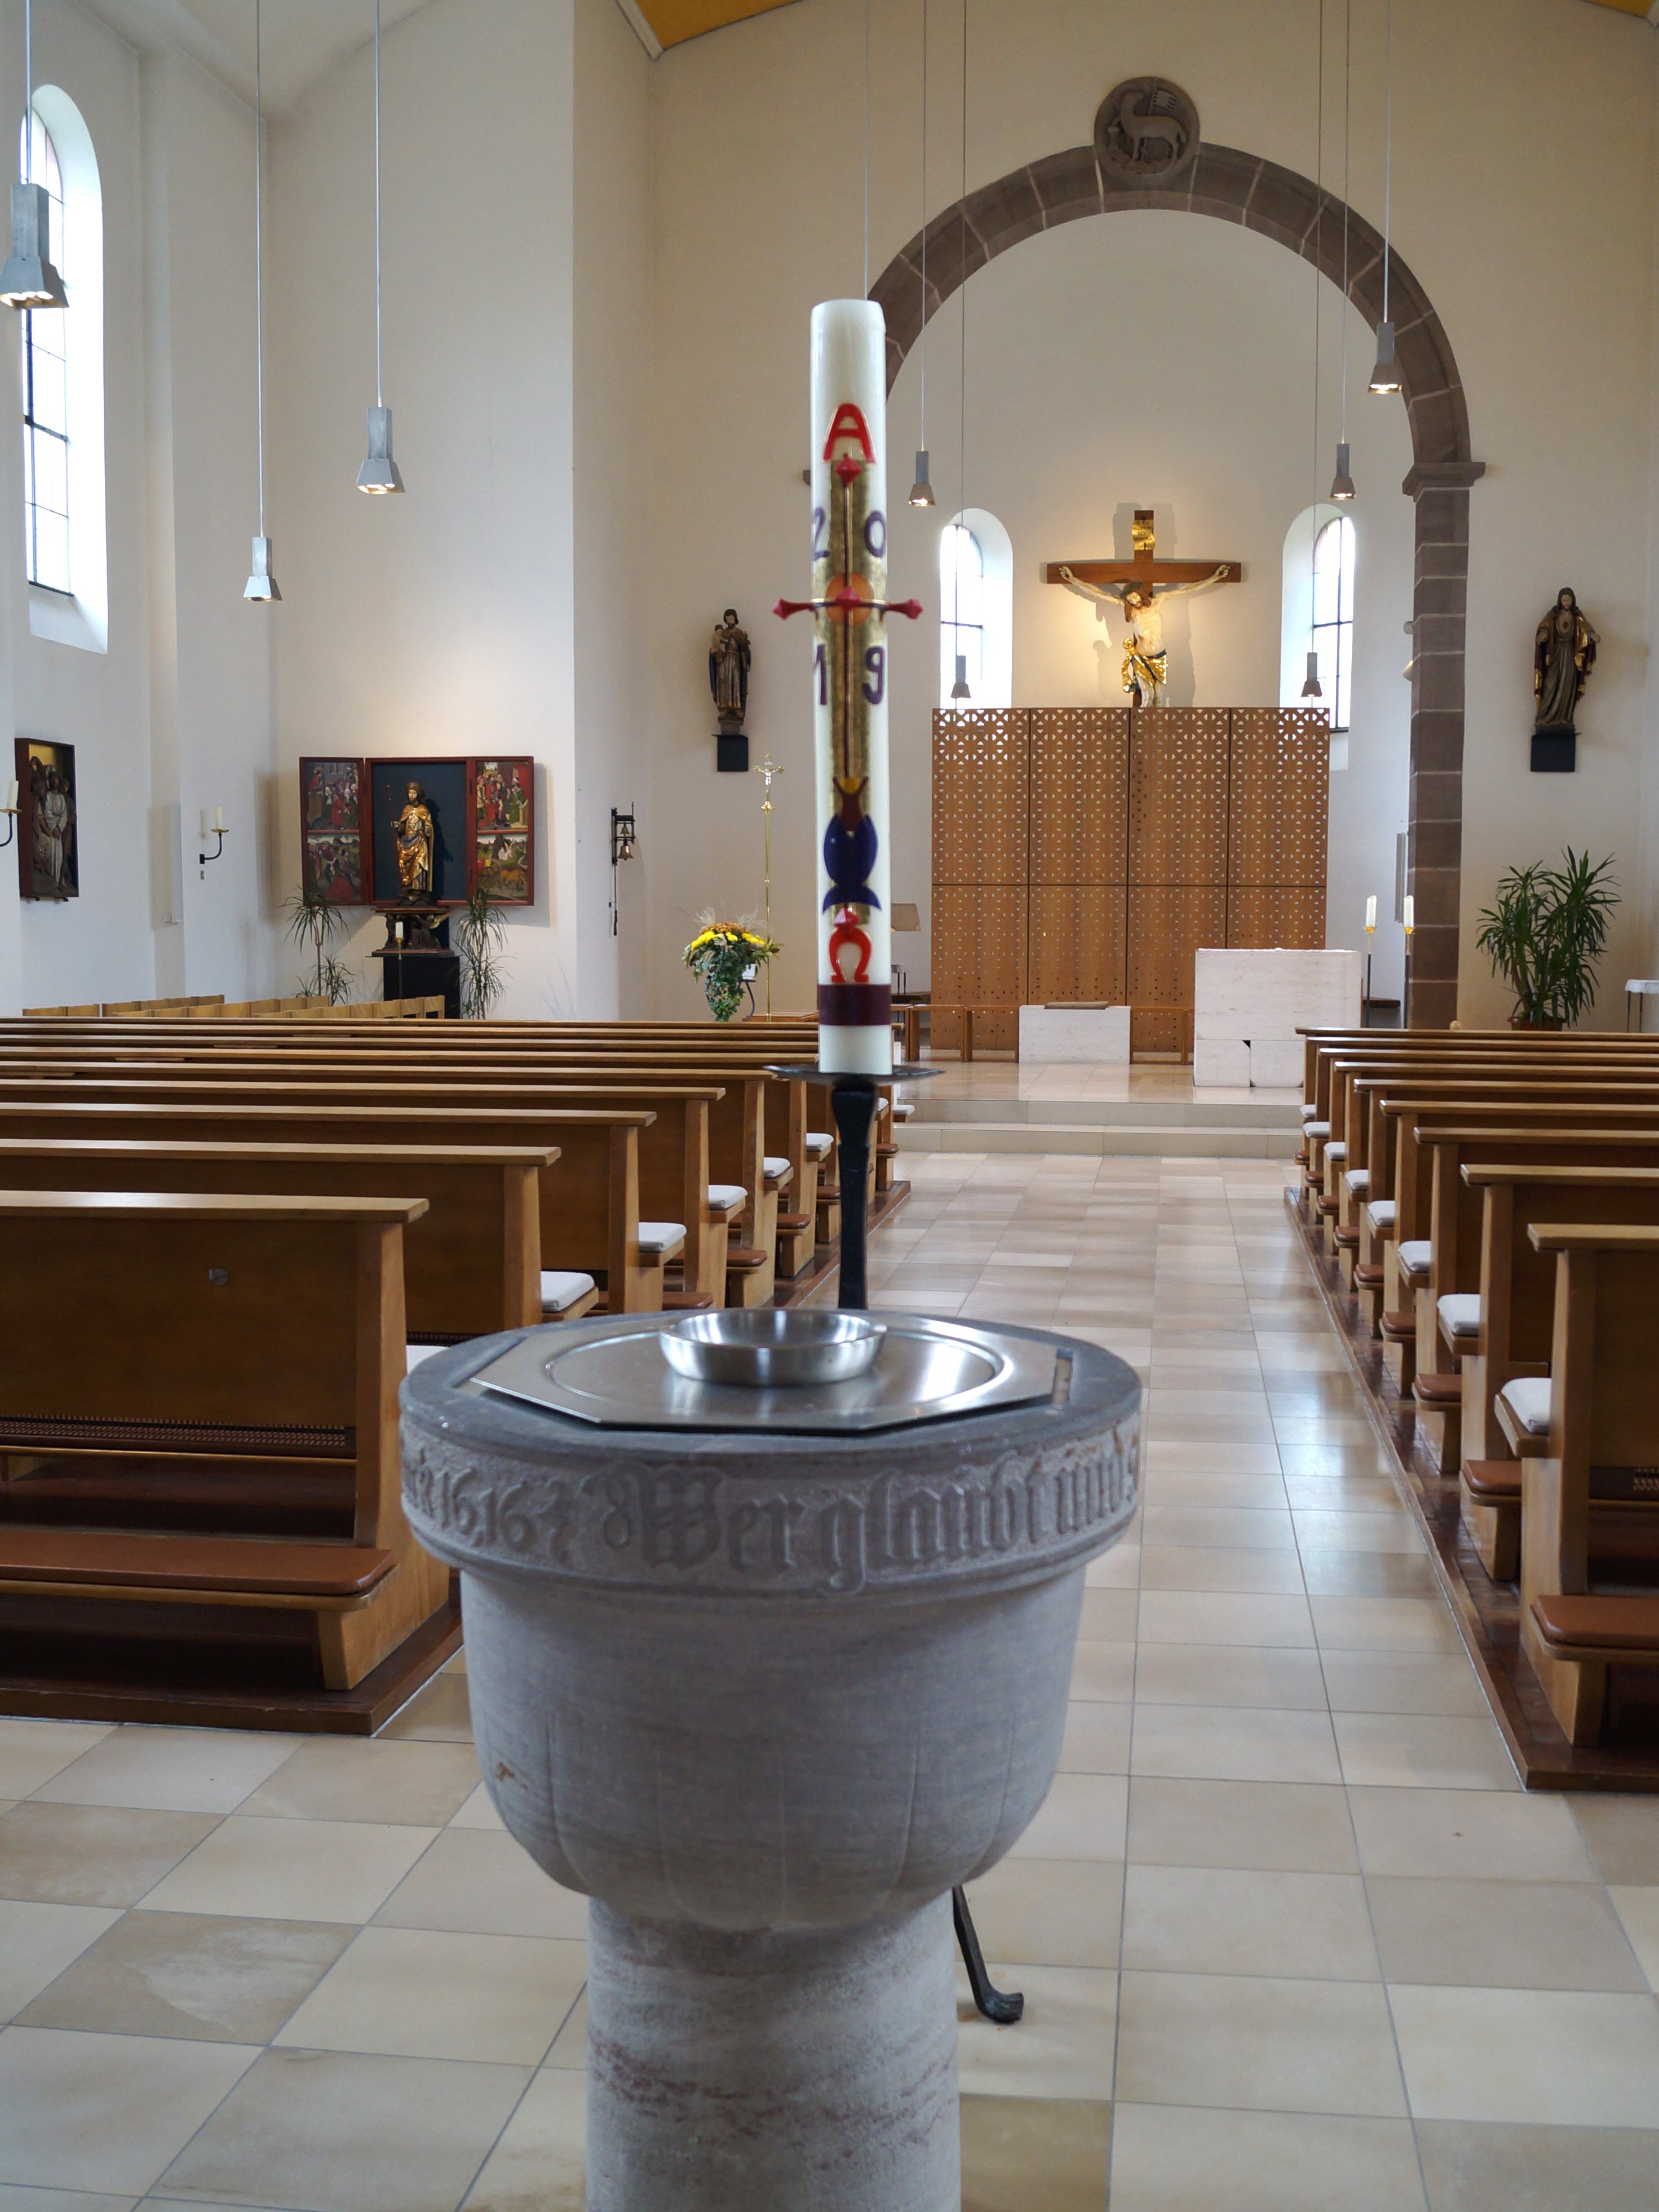 Das runde Taufbecken der katholischen Kirche mit dem Altar im Hintergrund